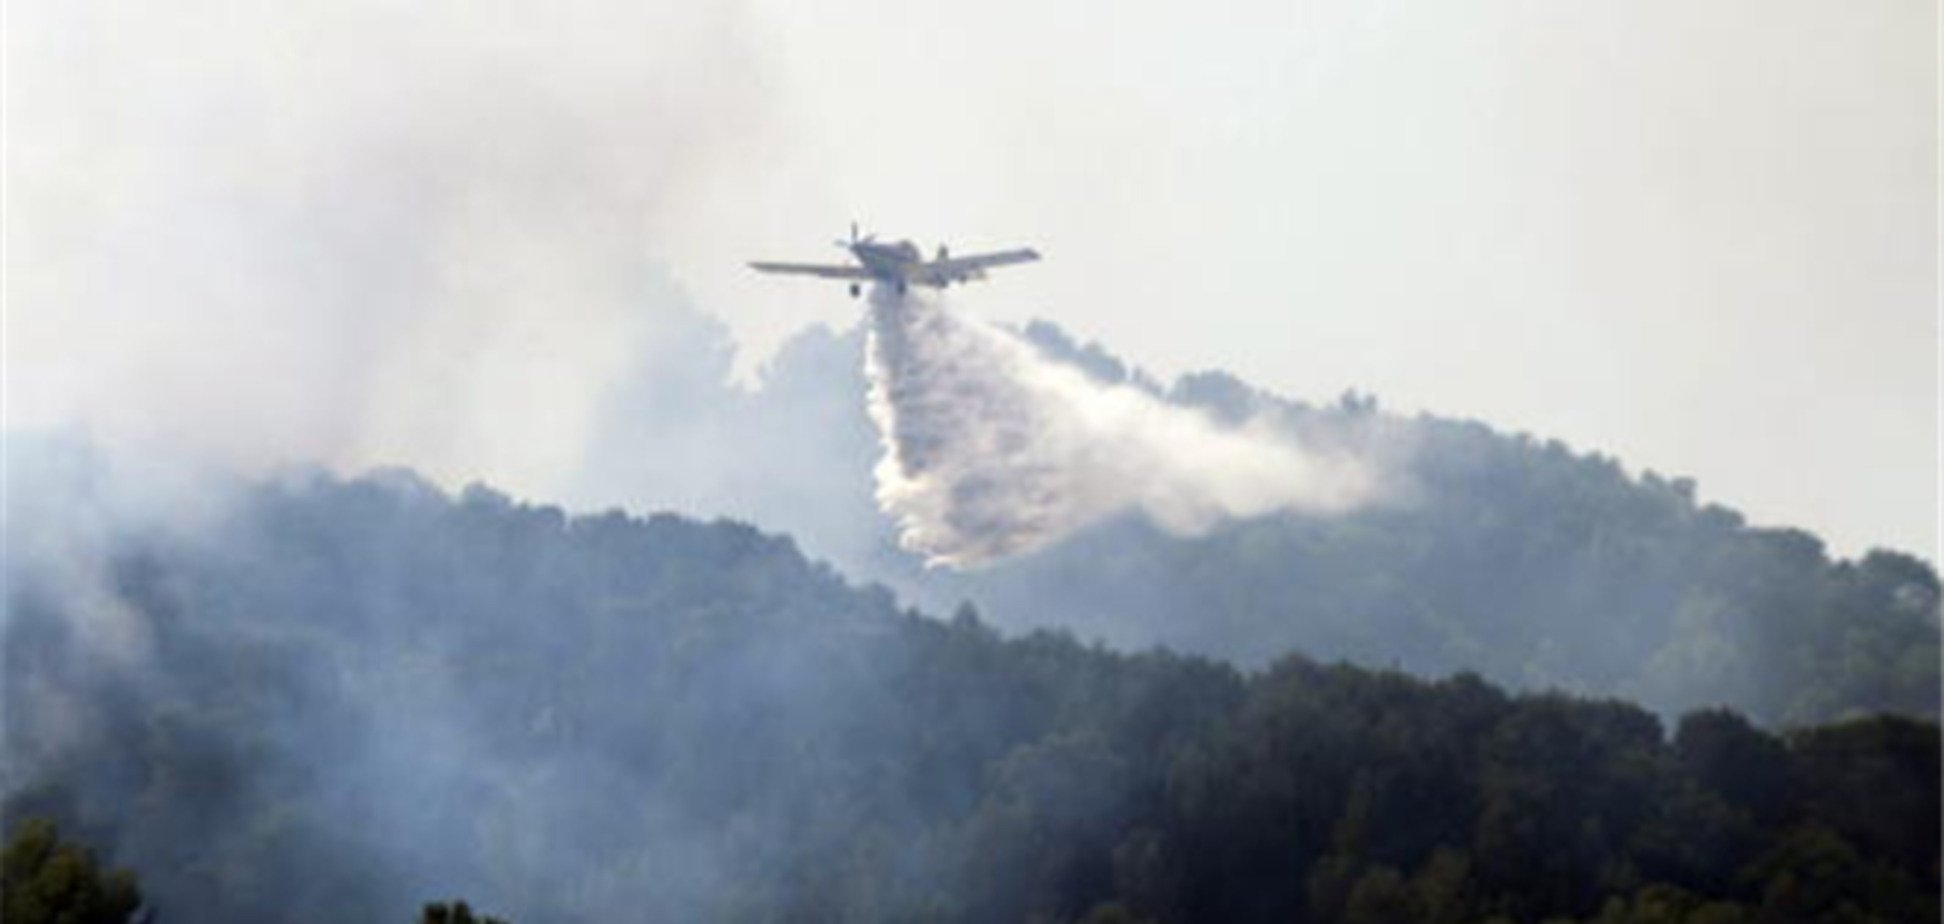 На Майорке бушуют лесные пожары: более 700 человек эвакуировано